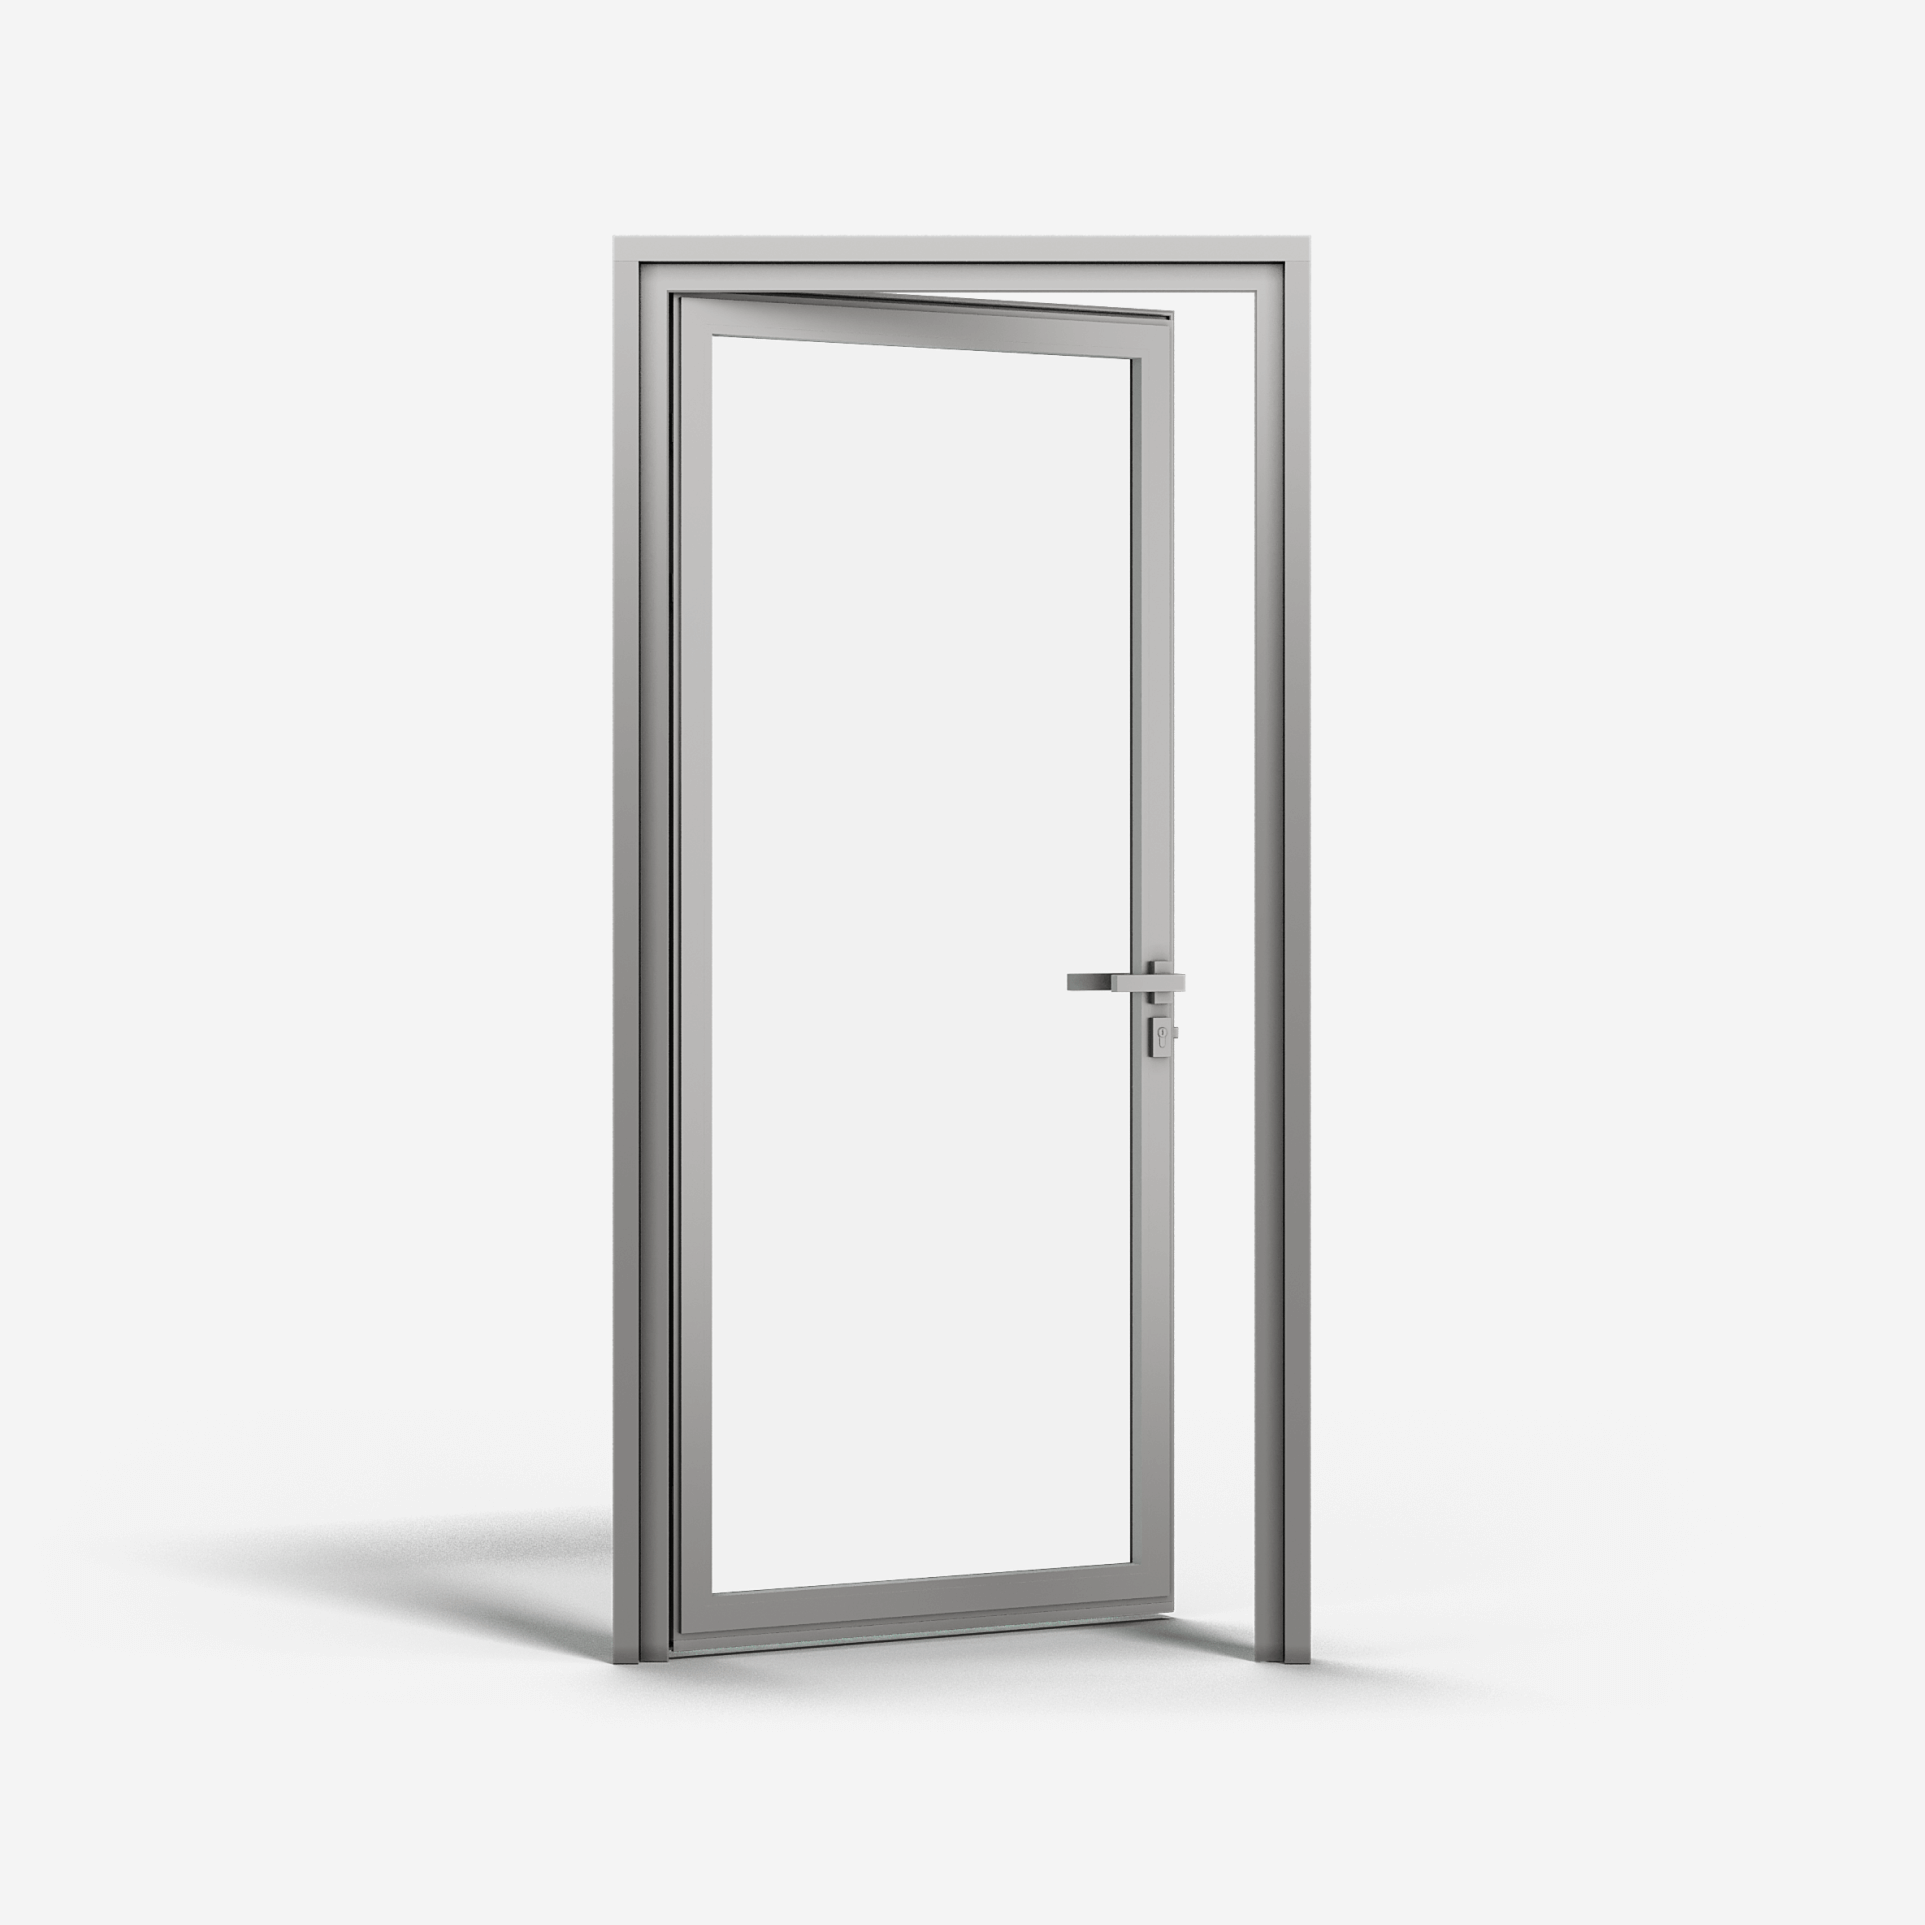 KOMPAS Aluminum Framed Single Swing Door - LH In